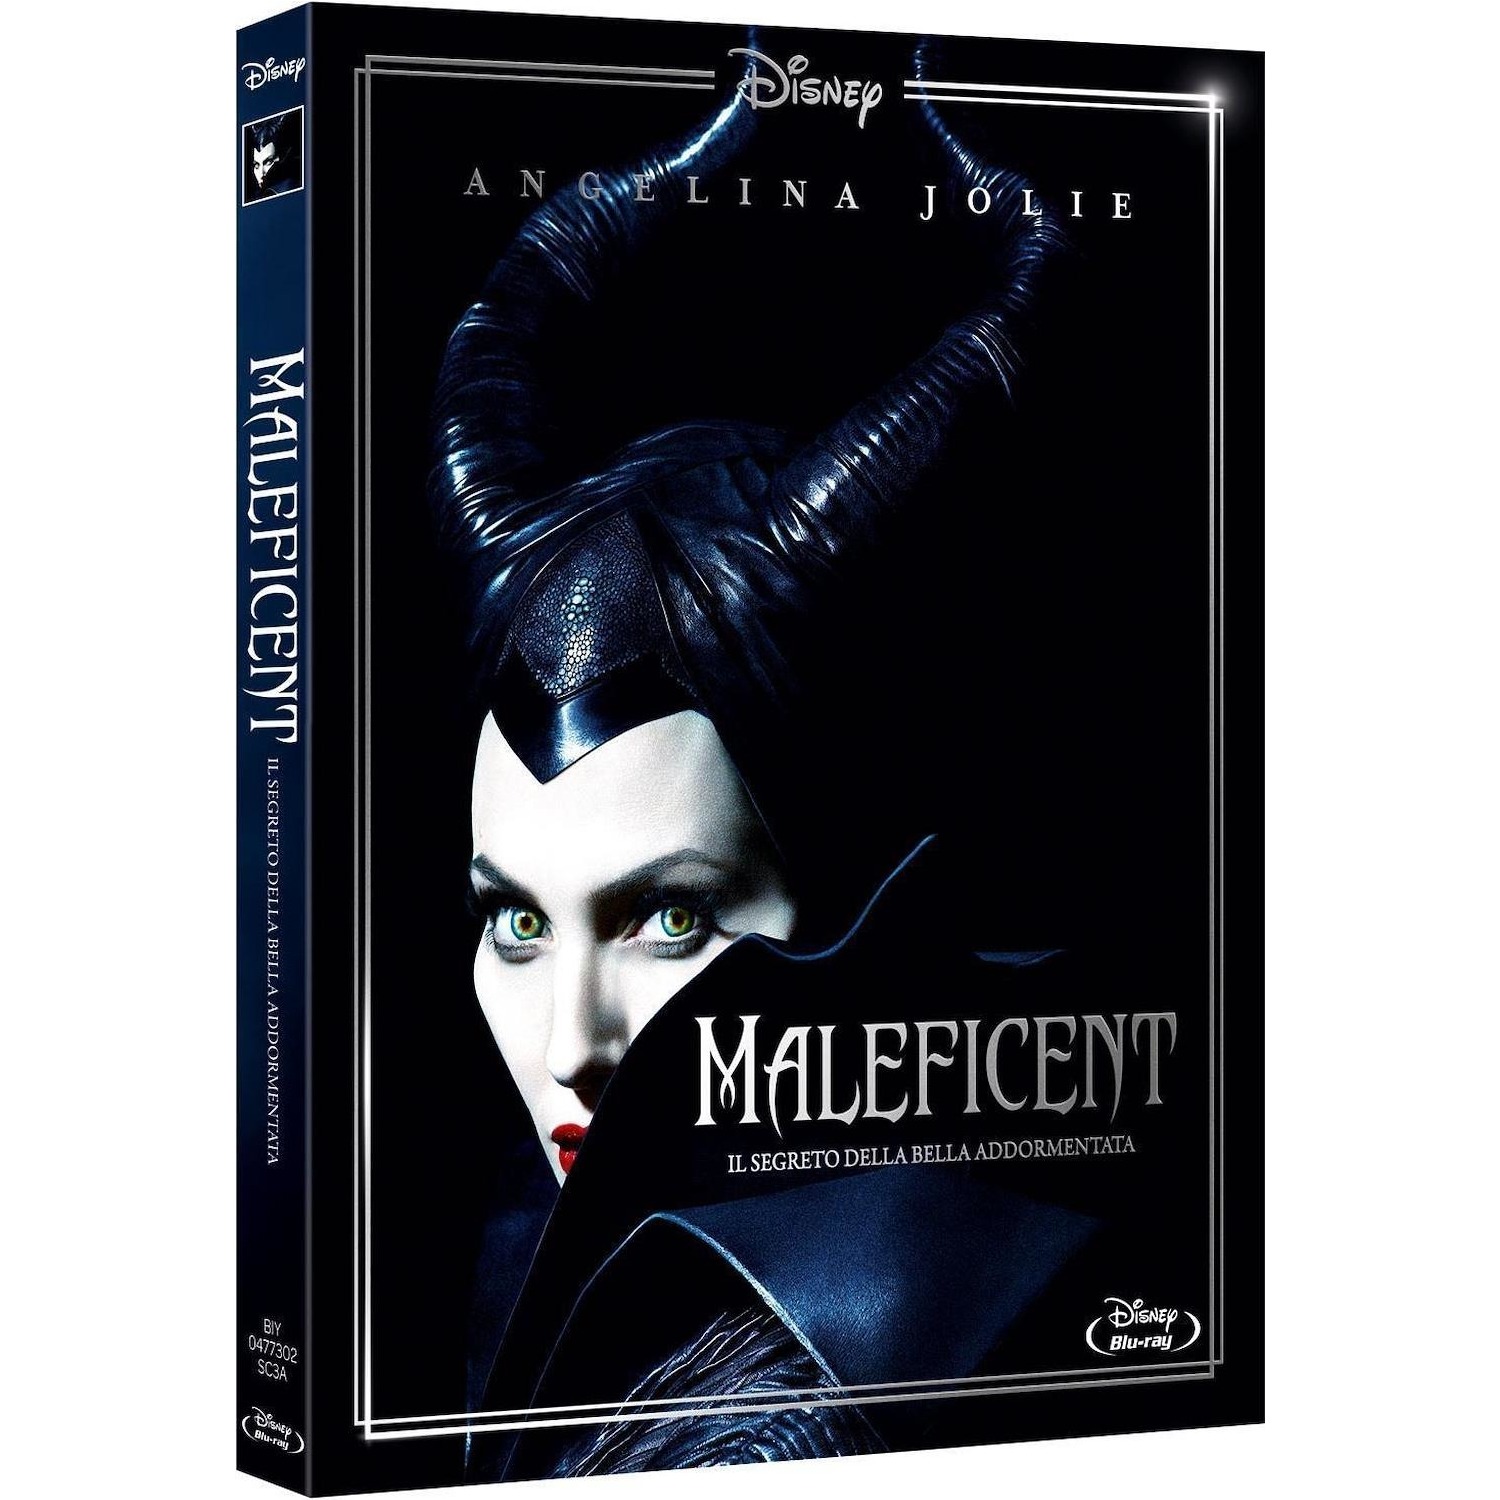 Immagine per Blu-ray Maleficent da DIMOStore